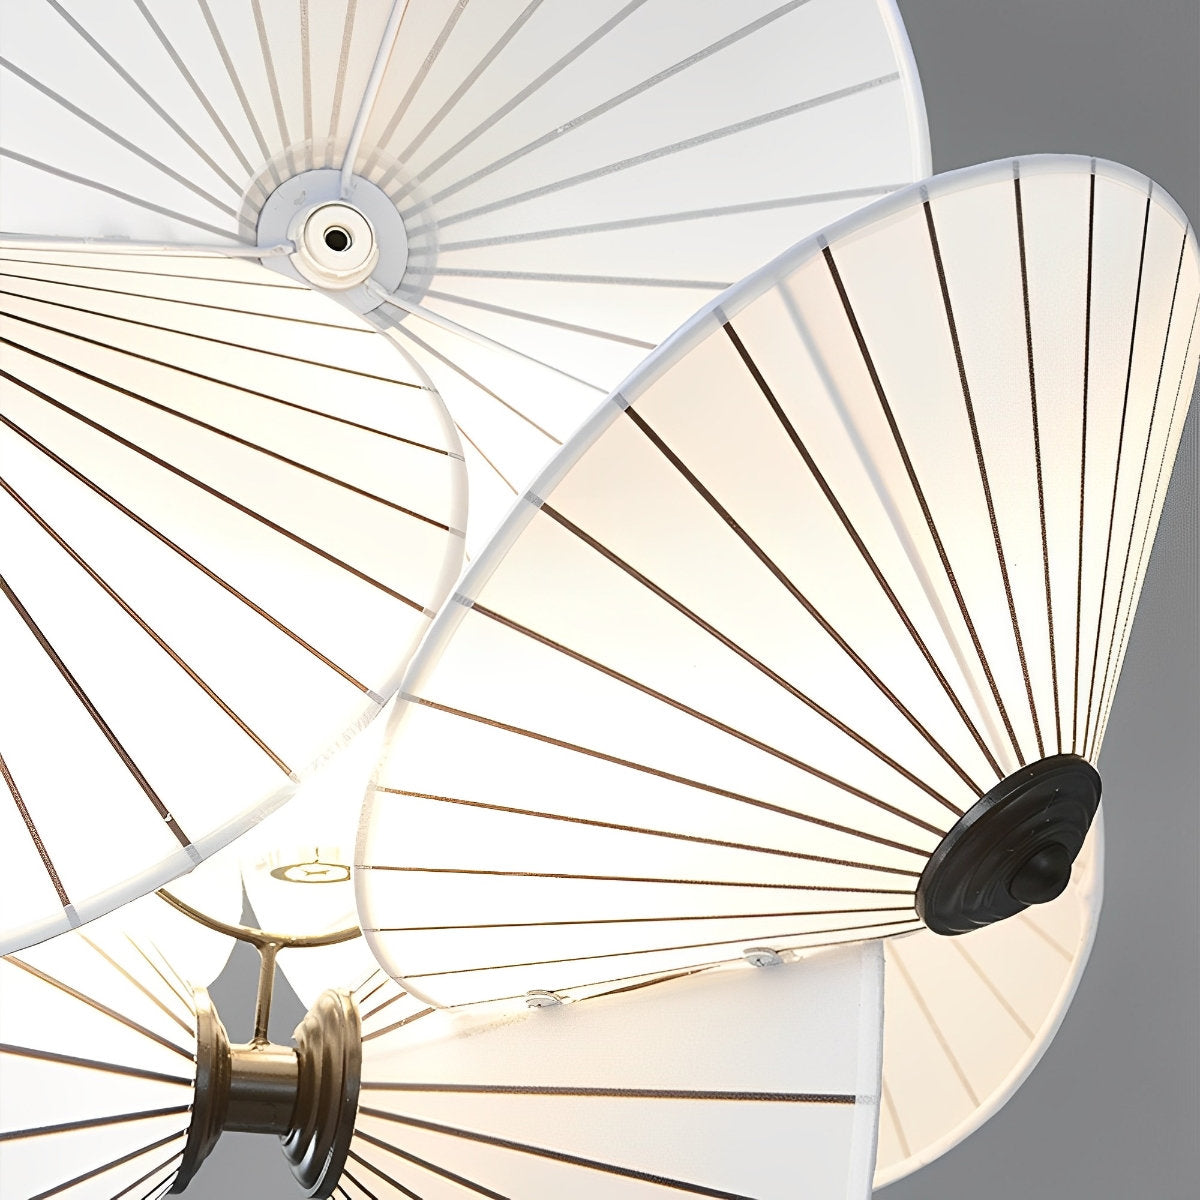 Modern Creative Minimalist Umbrella Art Chandelier Light - Flyachilles